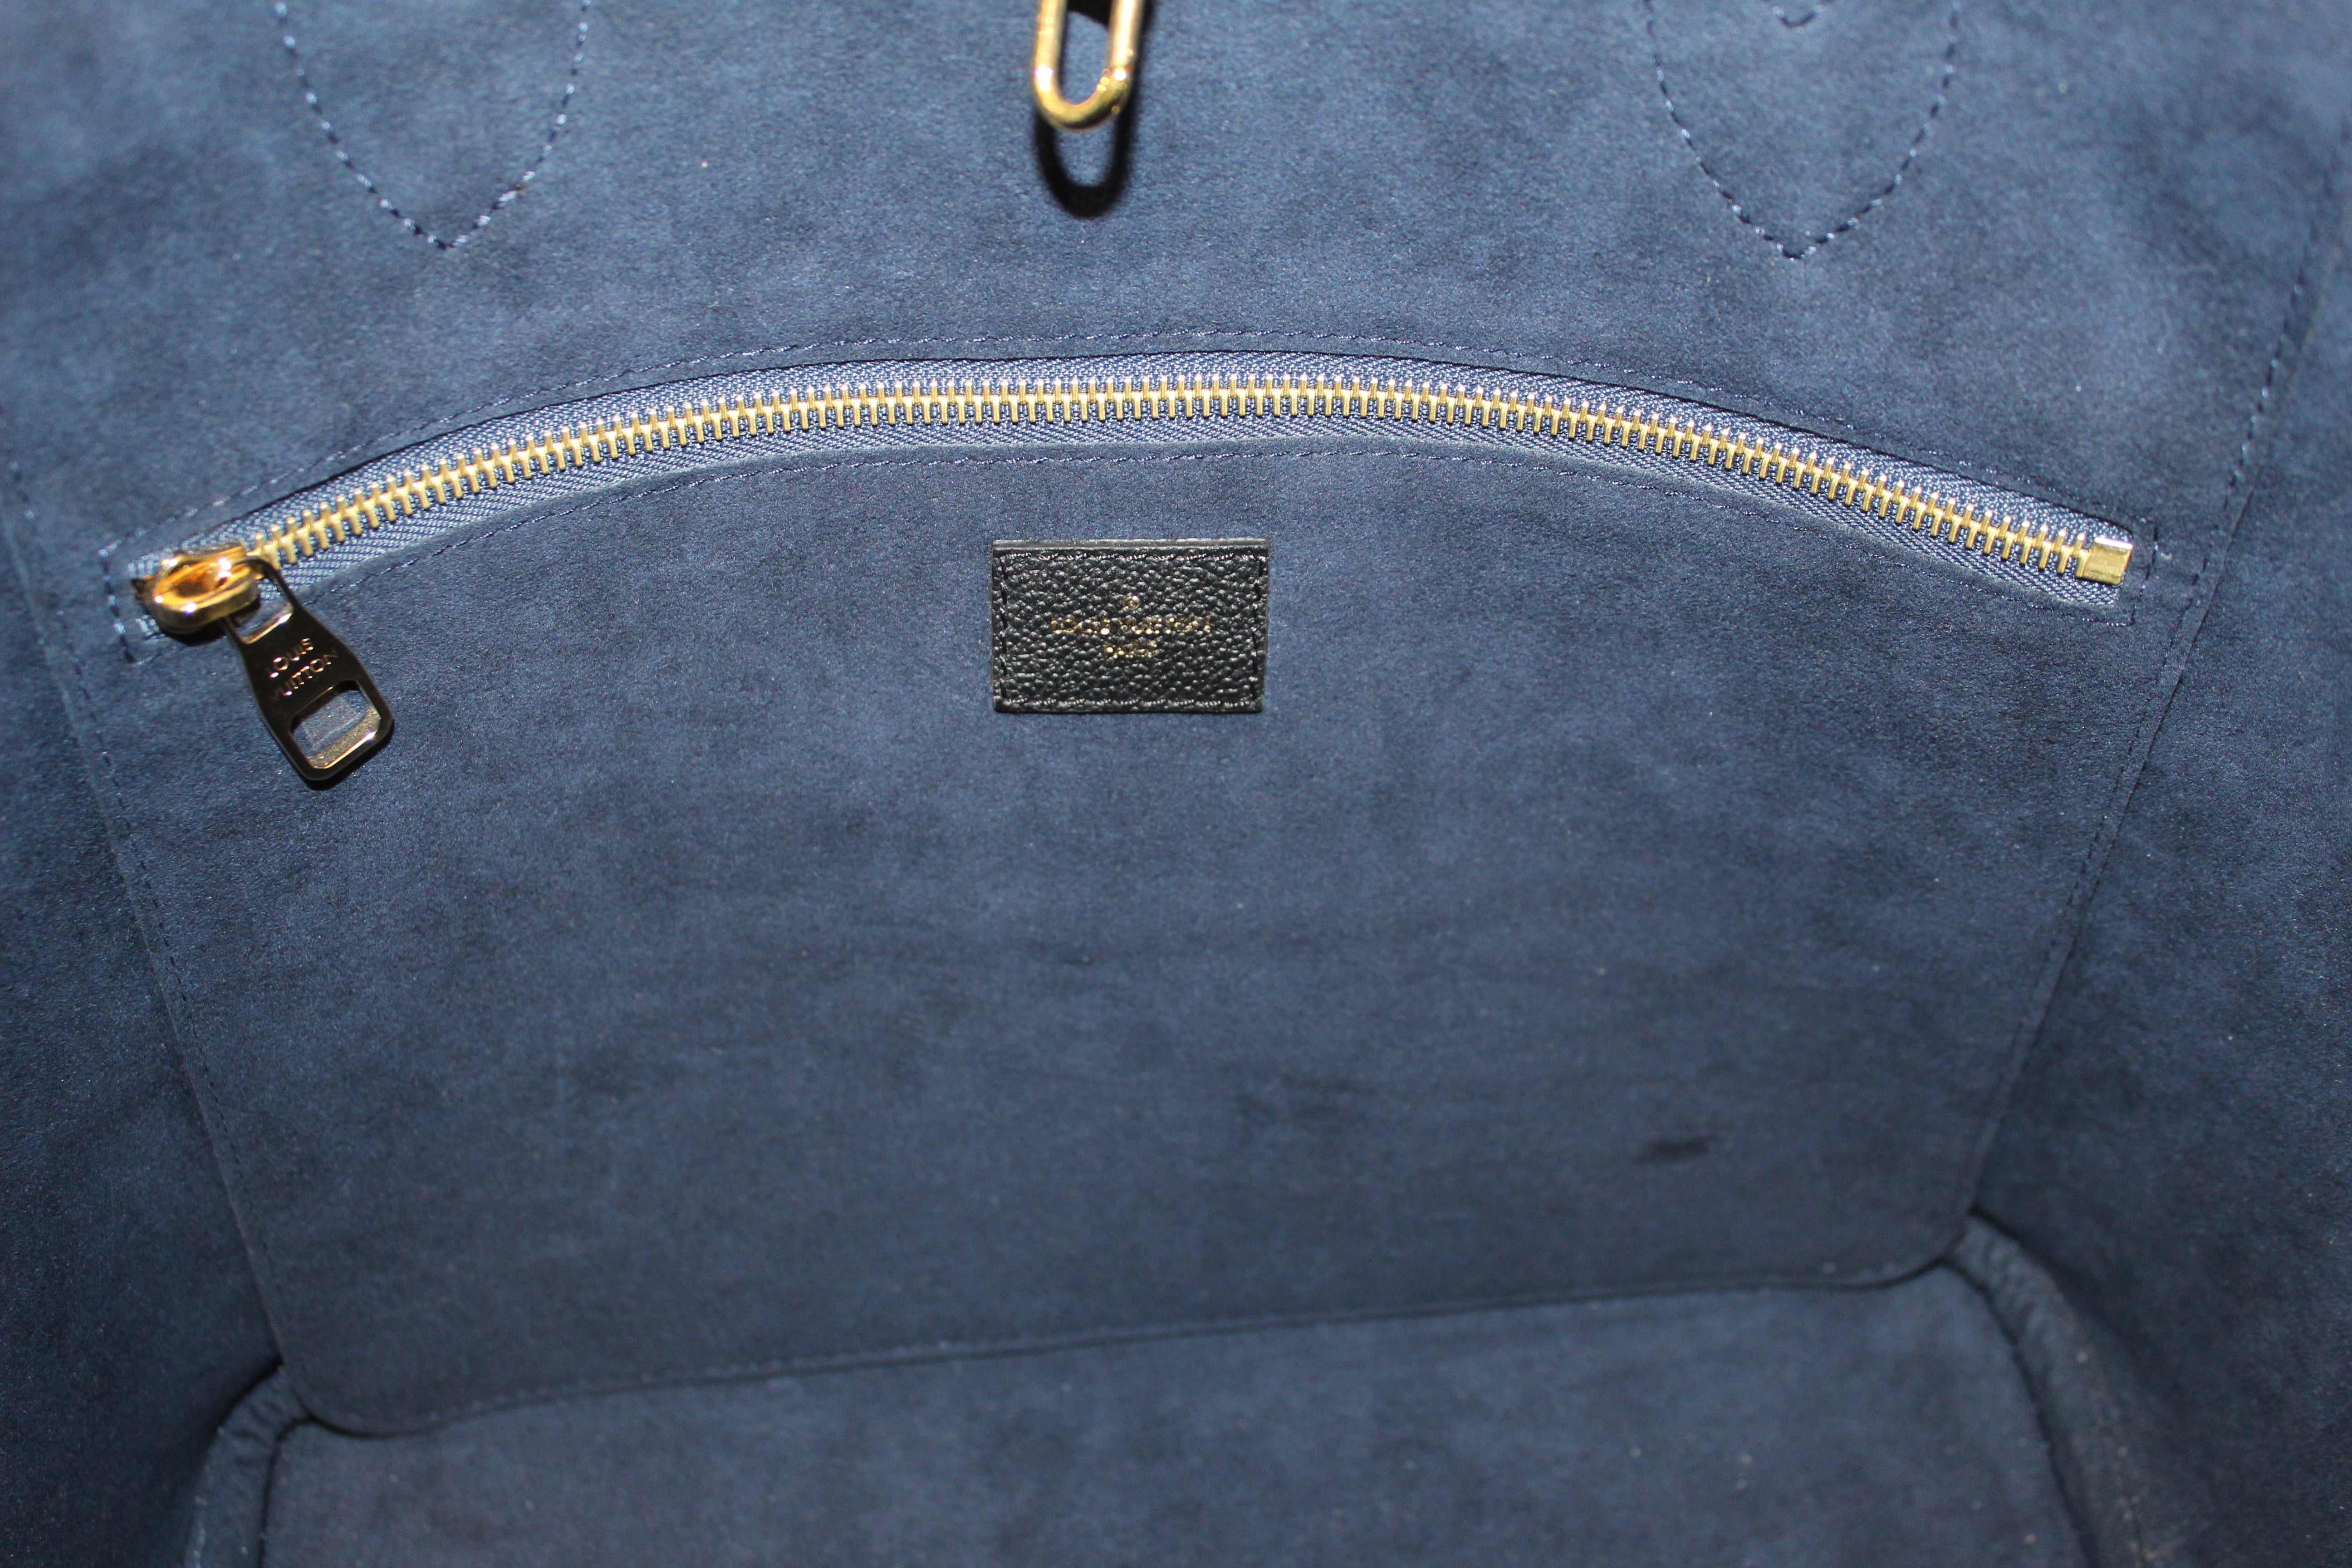 Authentic Louis Vuitton Black Monogram Empreinte Leather Neverfull MM –  Paris Station Shop